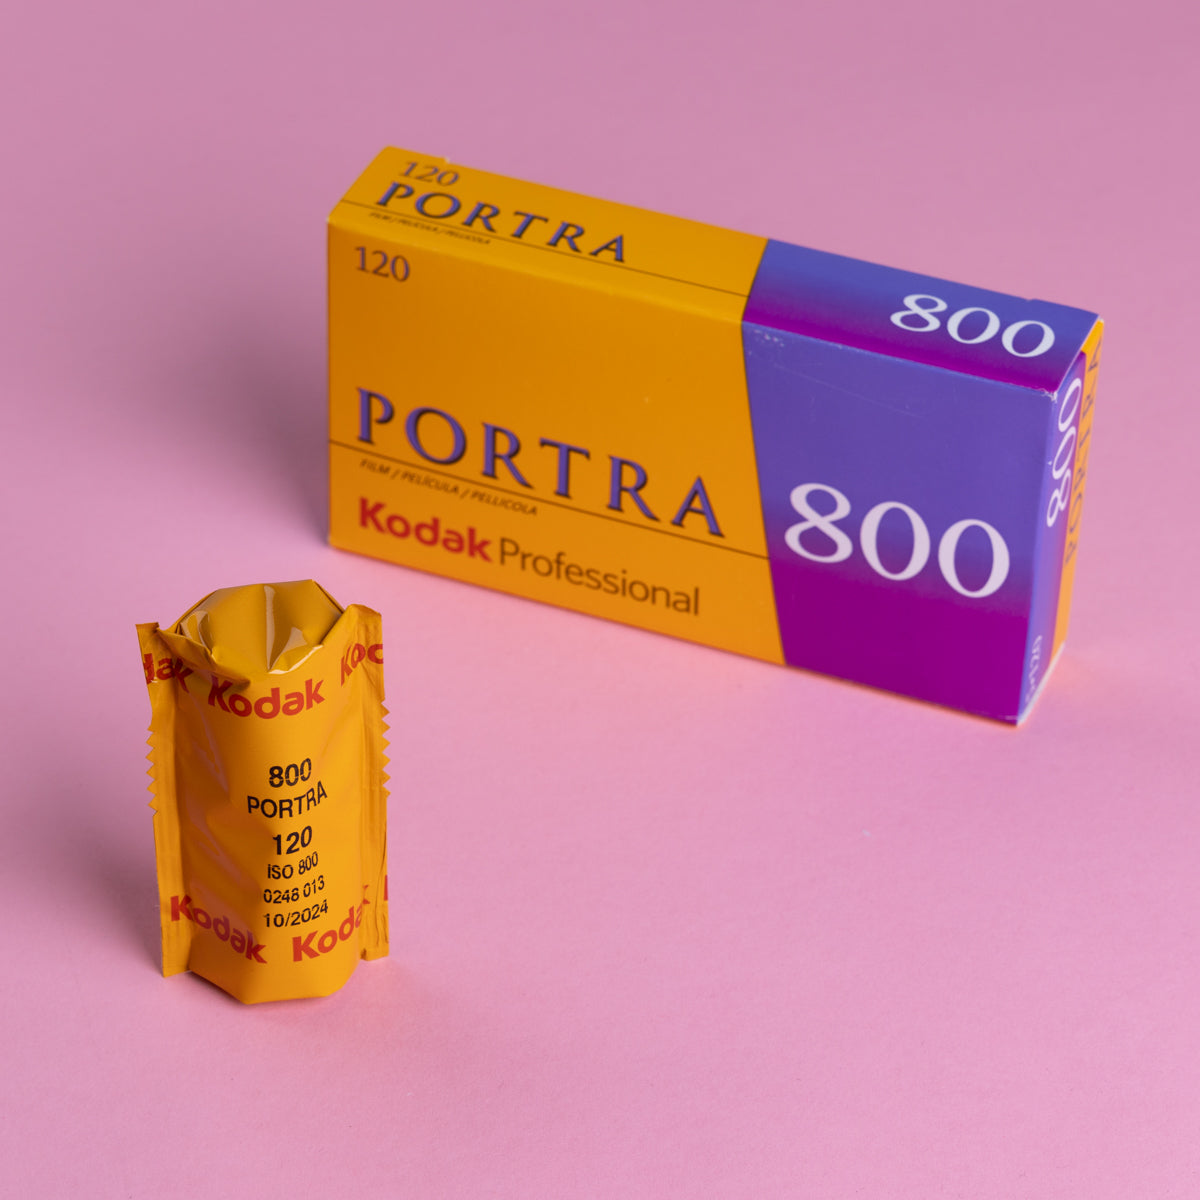 Kodak Portra 800 120 (1 x Single Roll)